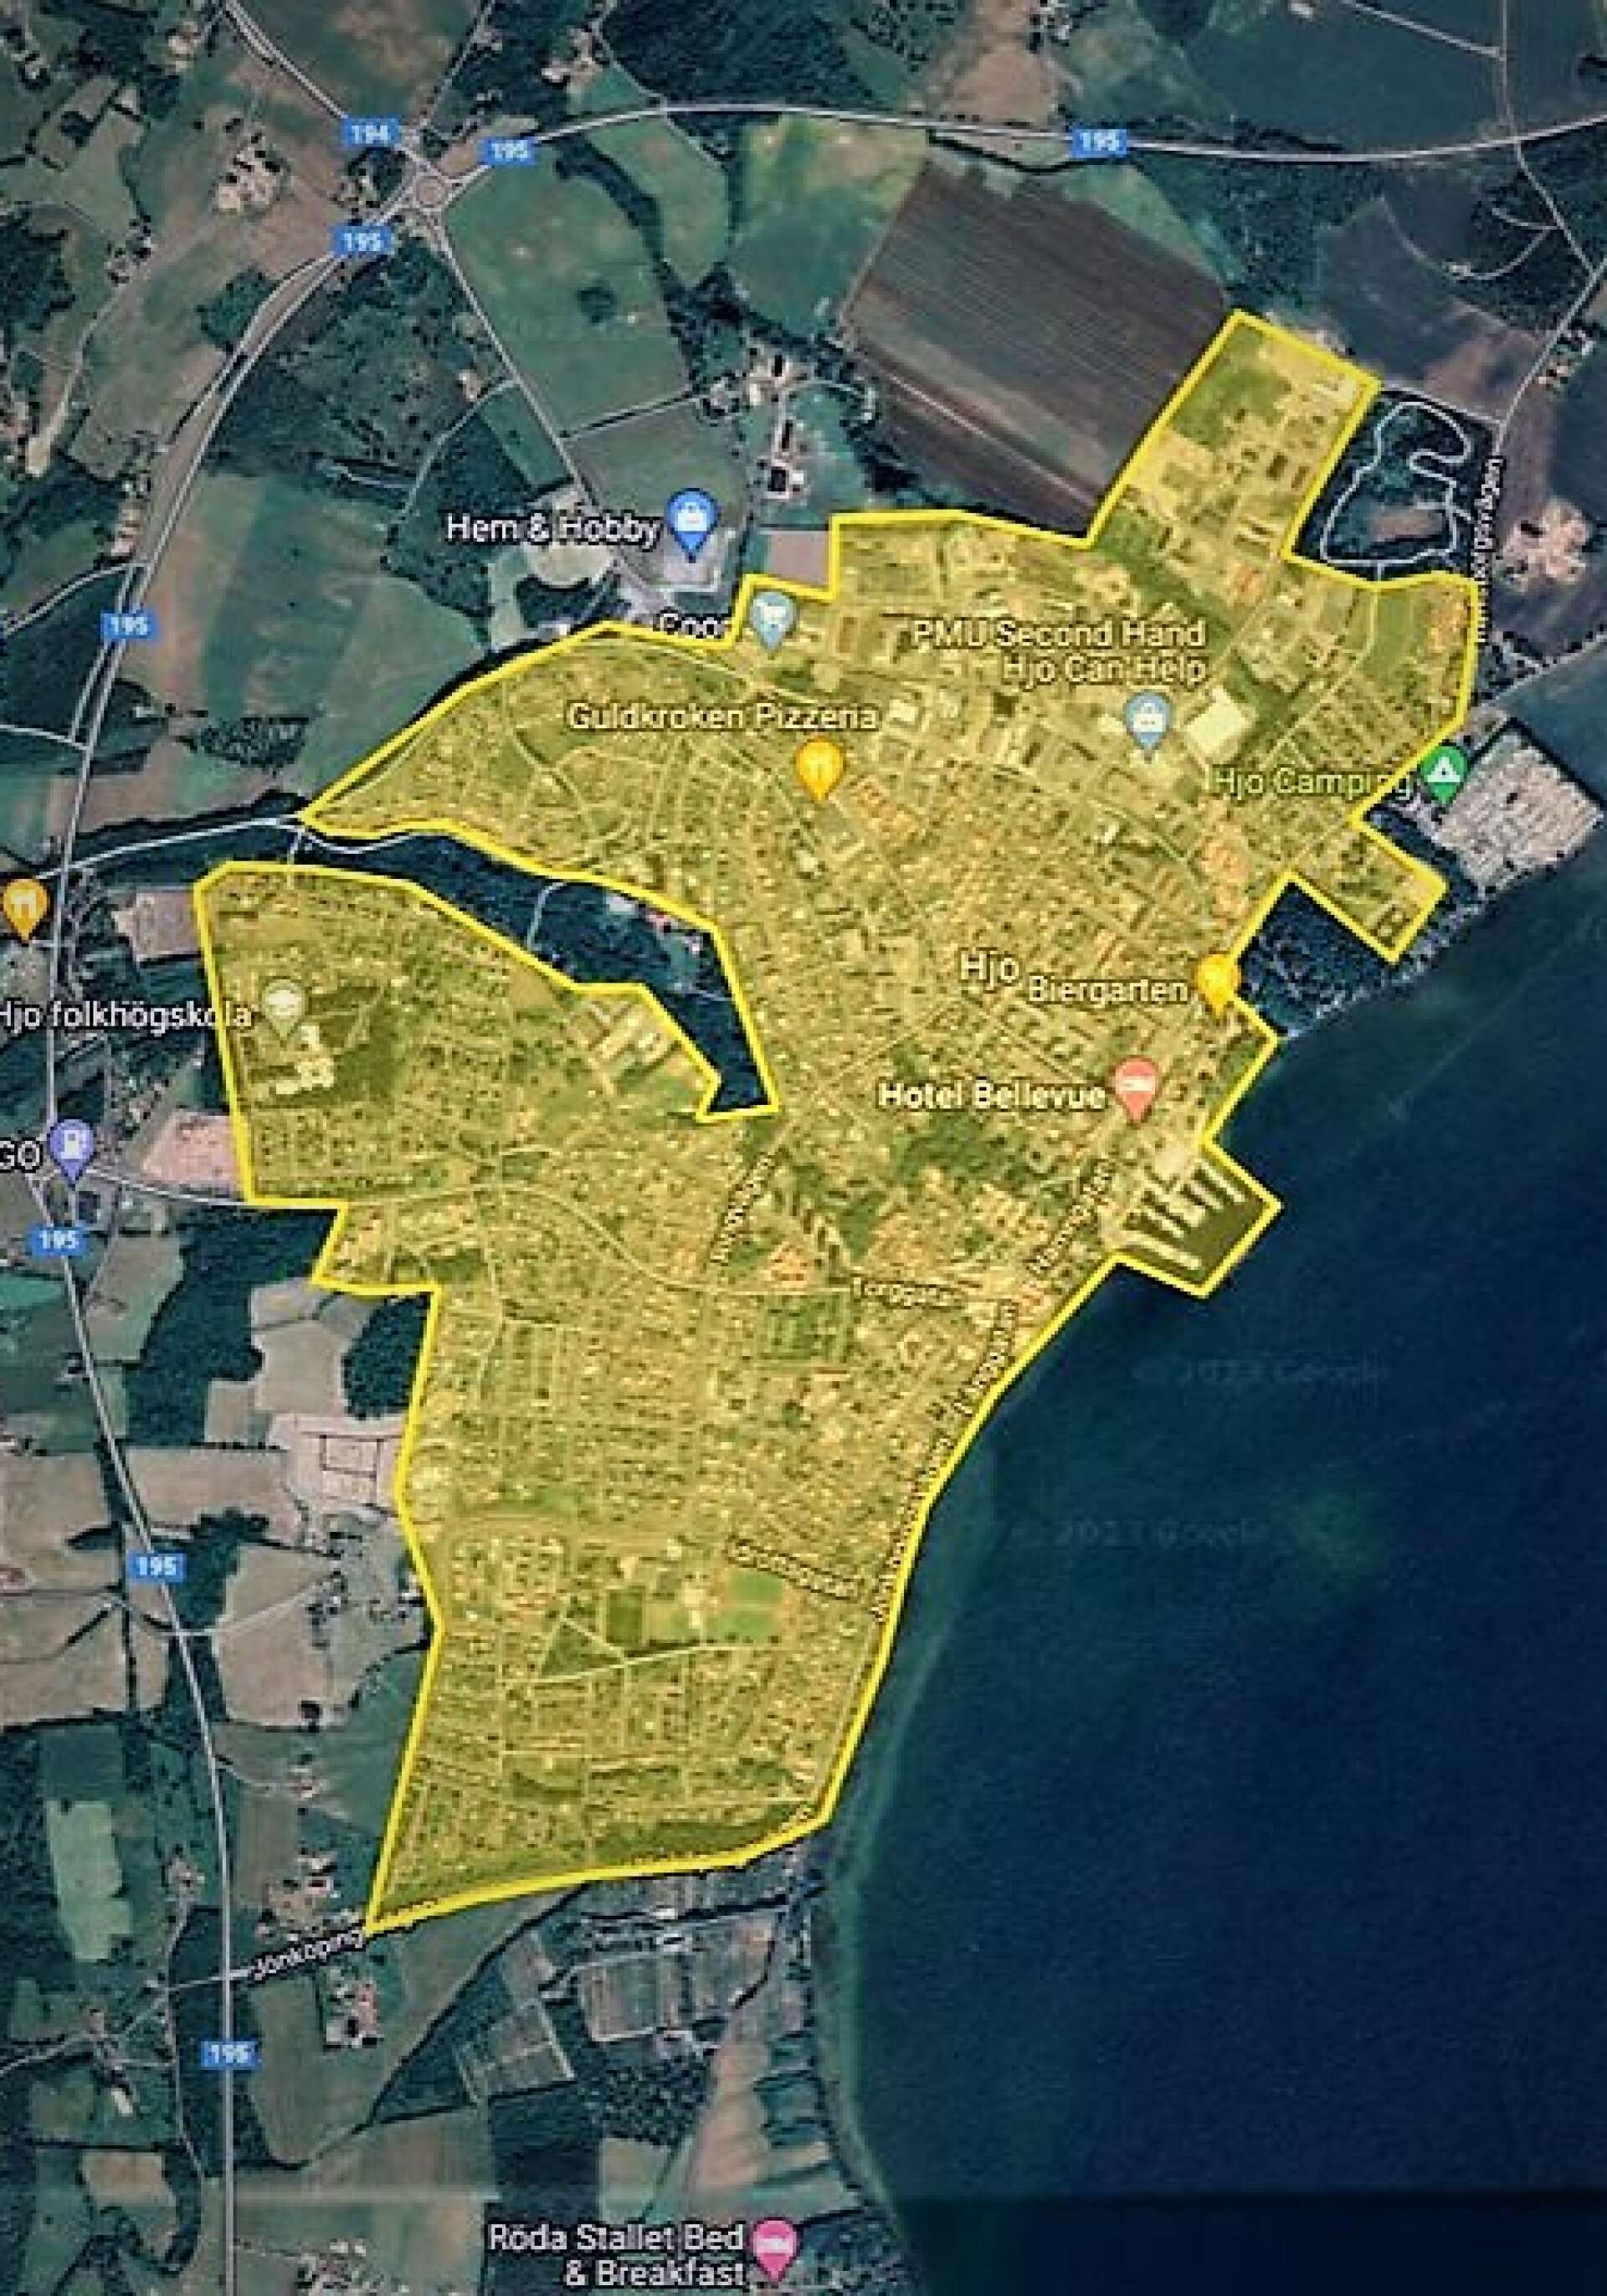 Drönare ska flyga över Hjo stad inom det markerade området för att uppdatera kommunens kartmaterial. 